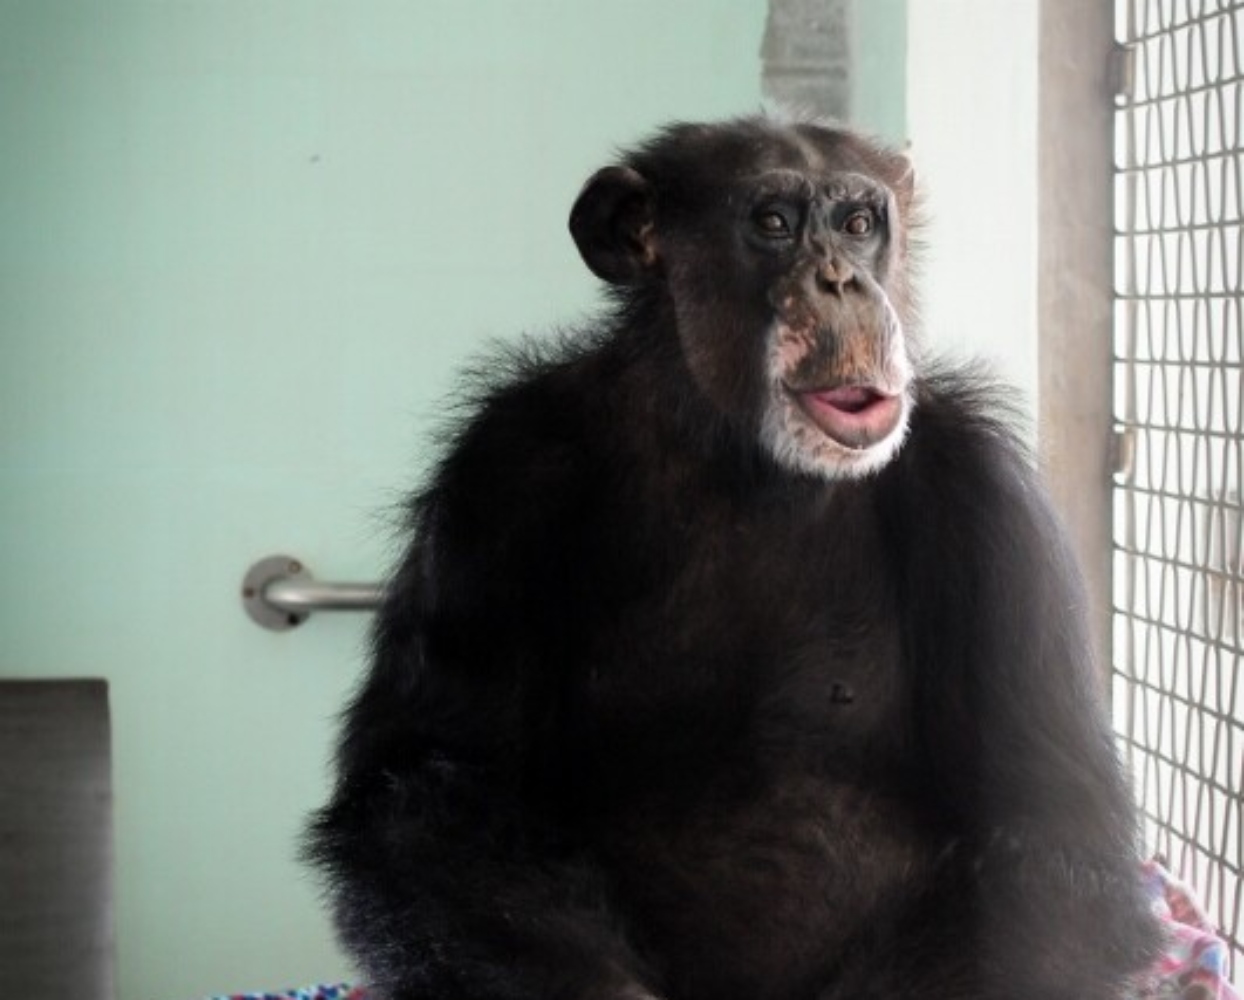 Ρον: Ο χιμπατζής που πέρασε τα πρώτα χρόνια του ως πειραματόζωο του αμερικανικού στρατού